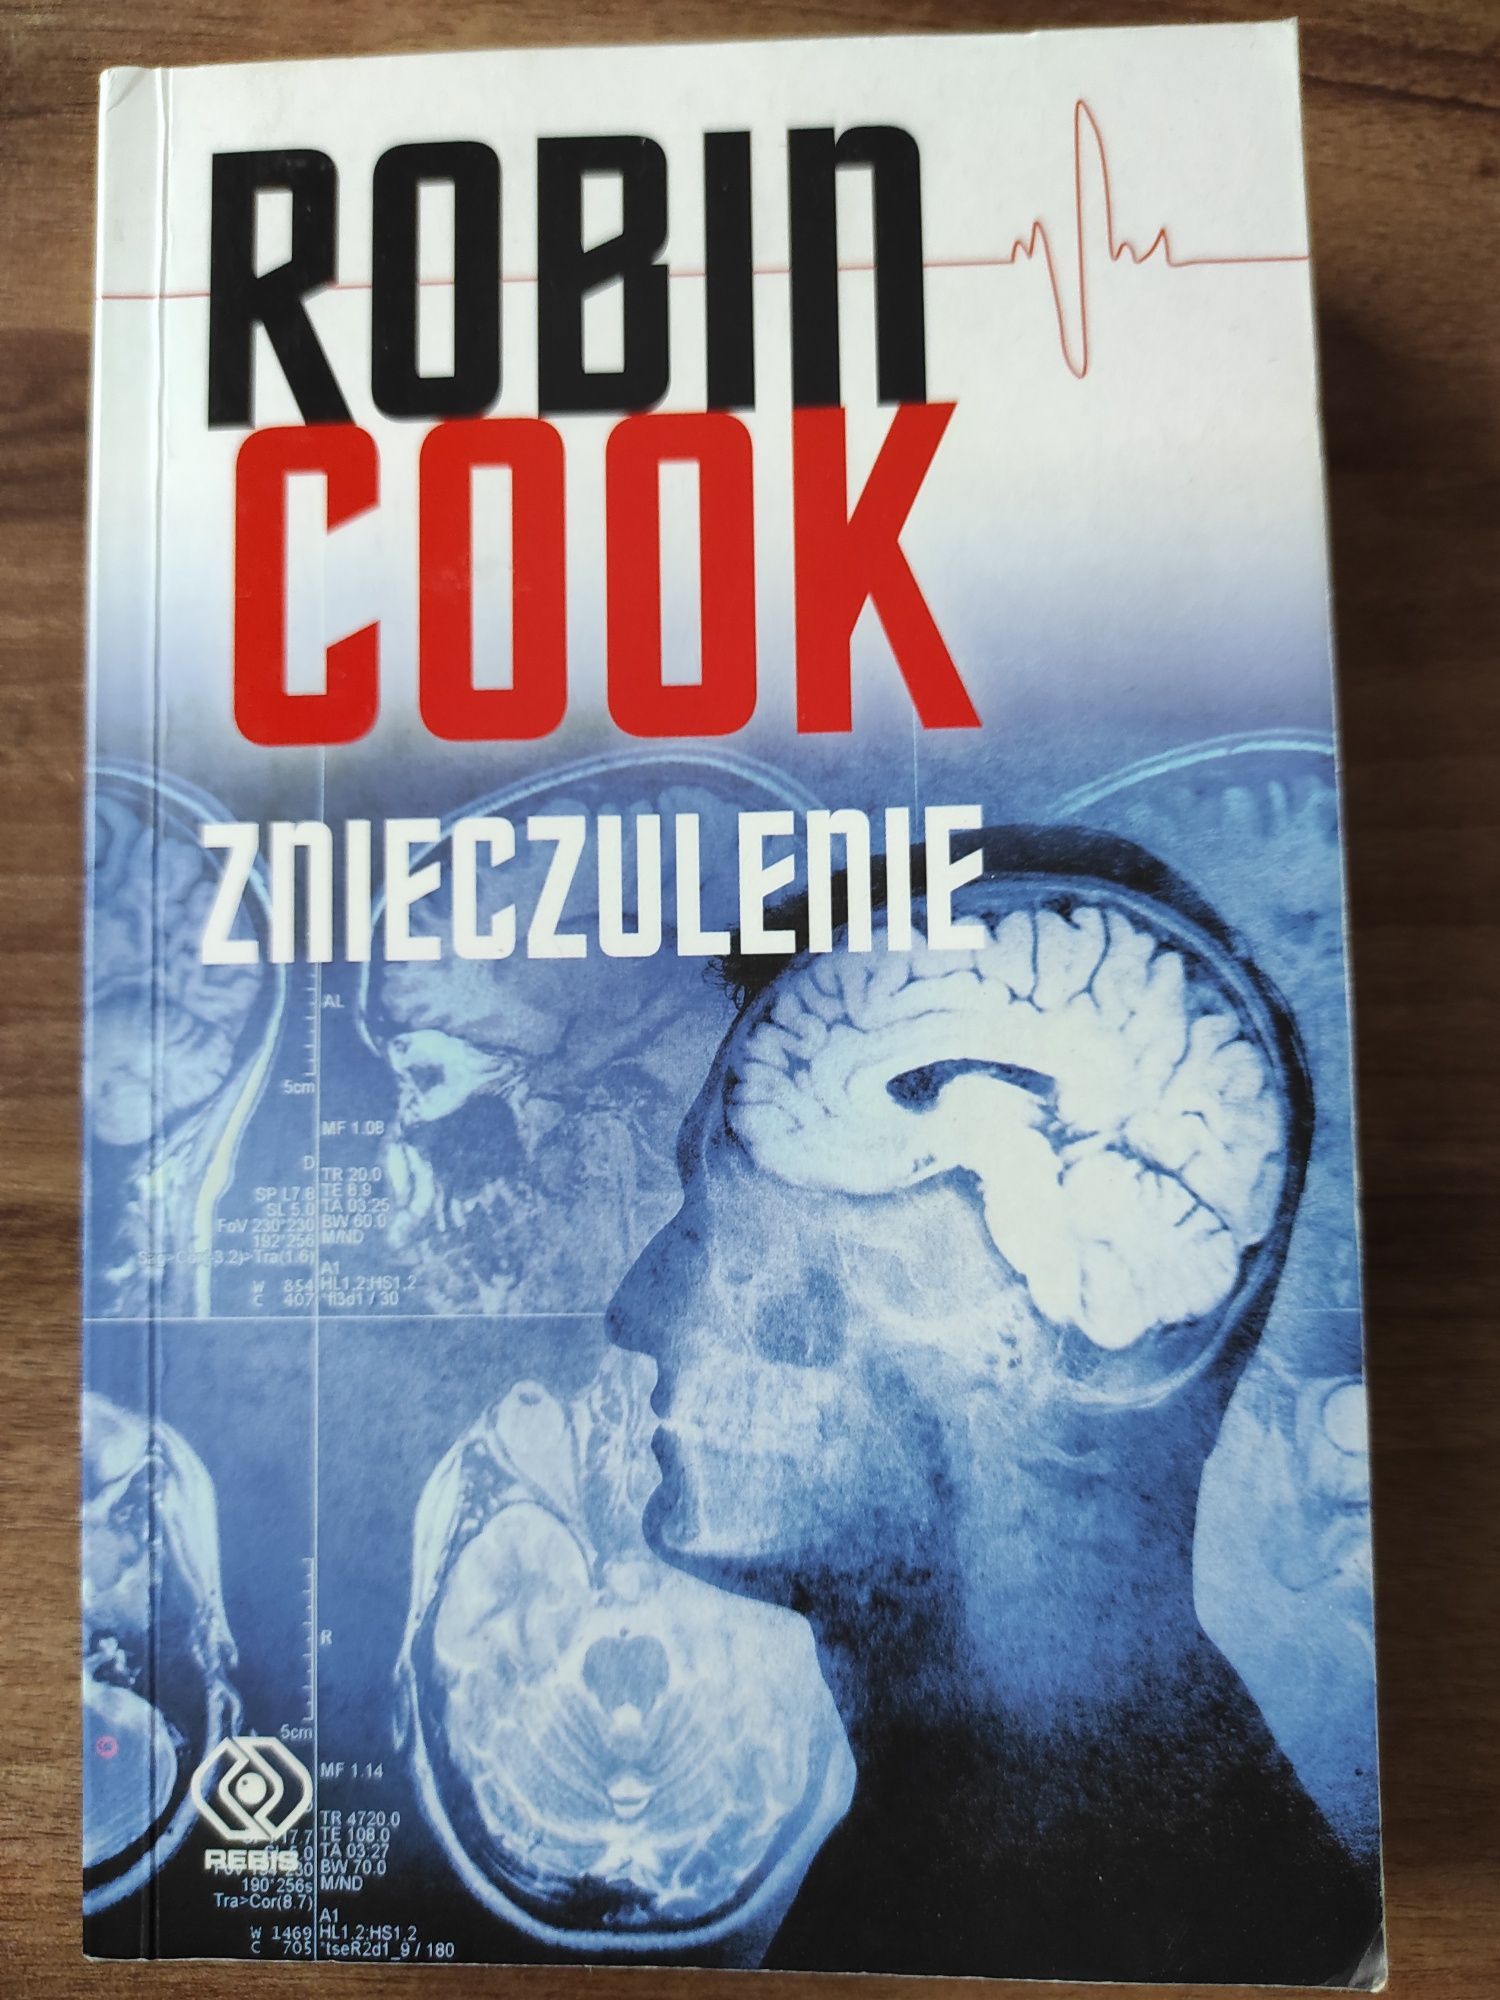 Książka pt. "Znieczulenie" Robin Cook